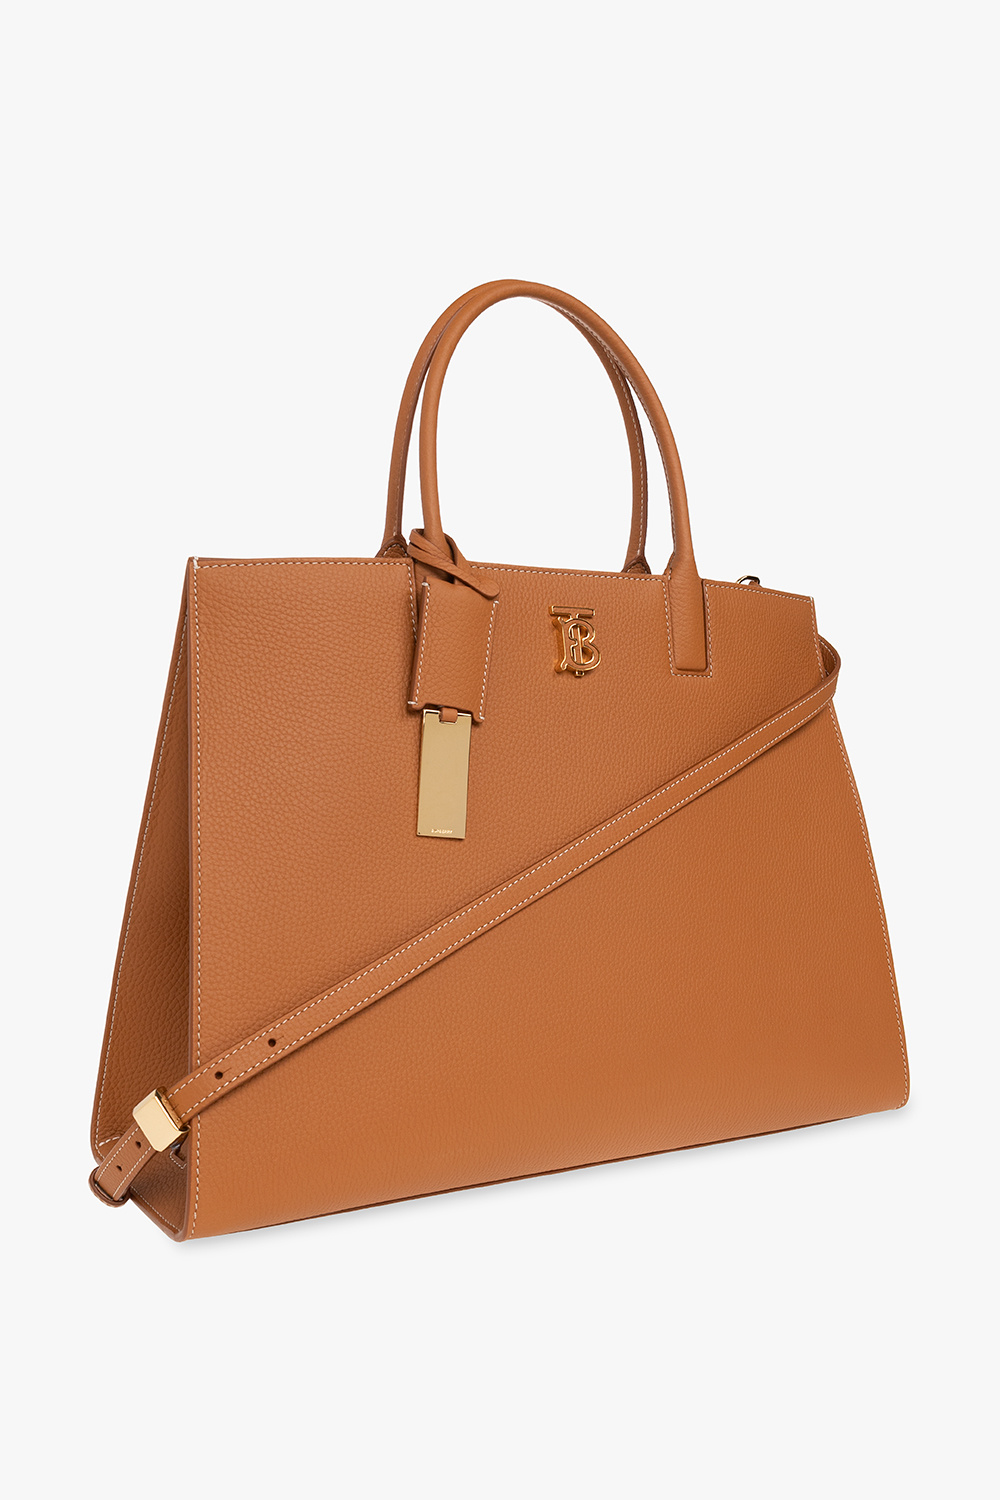 Burberry ‘Frances Medium’ shopper bag